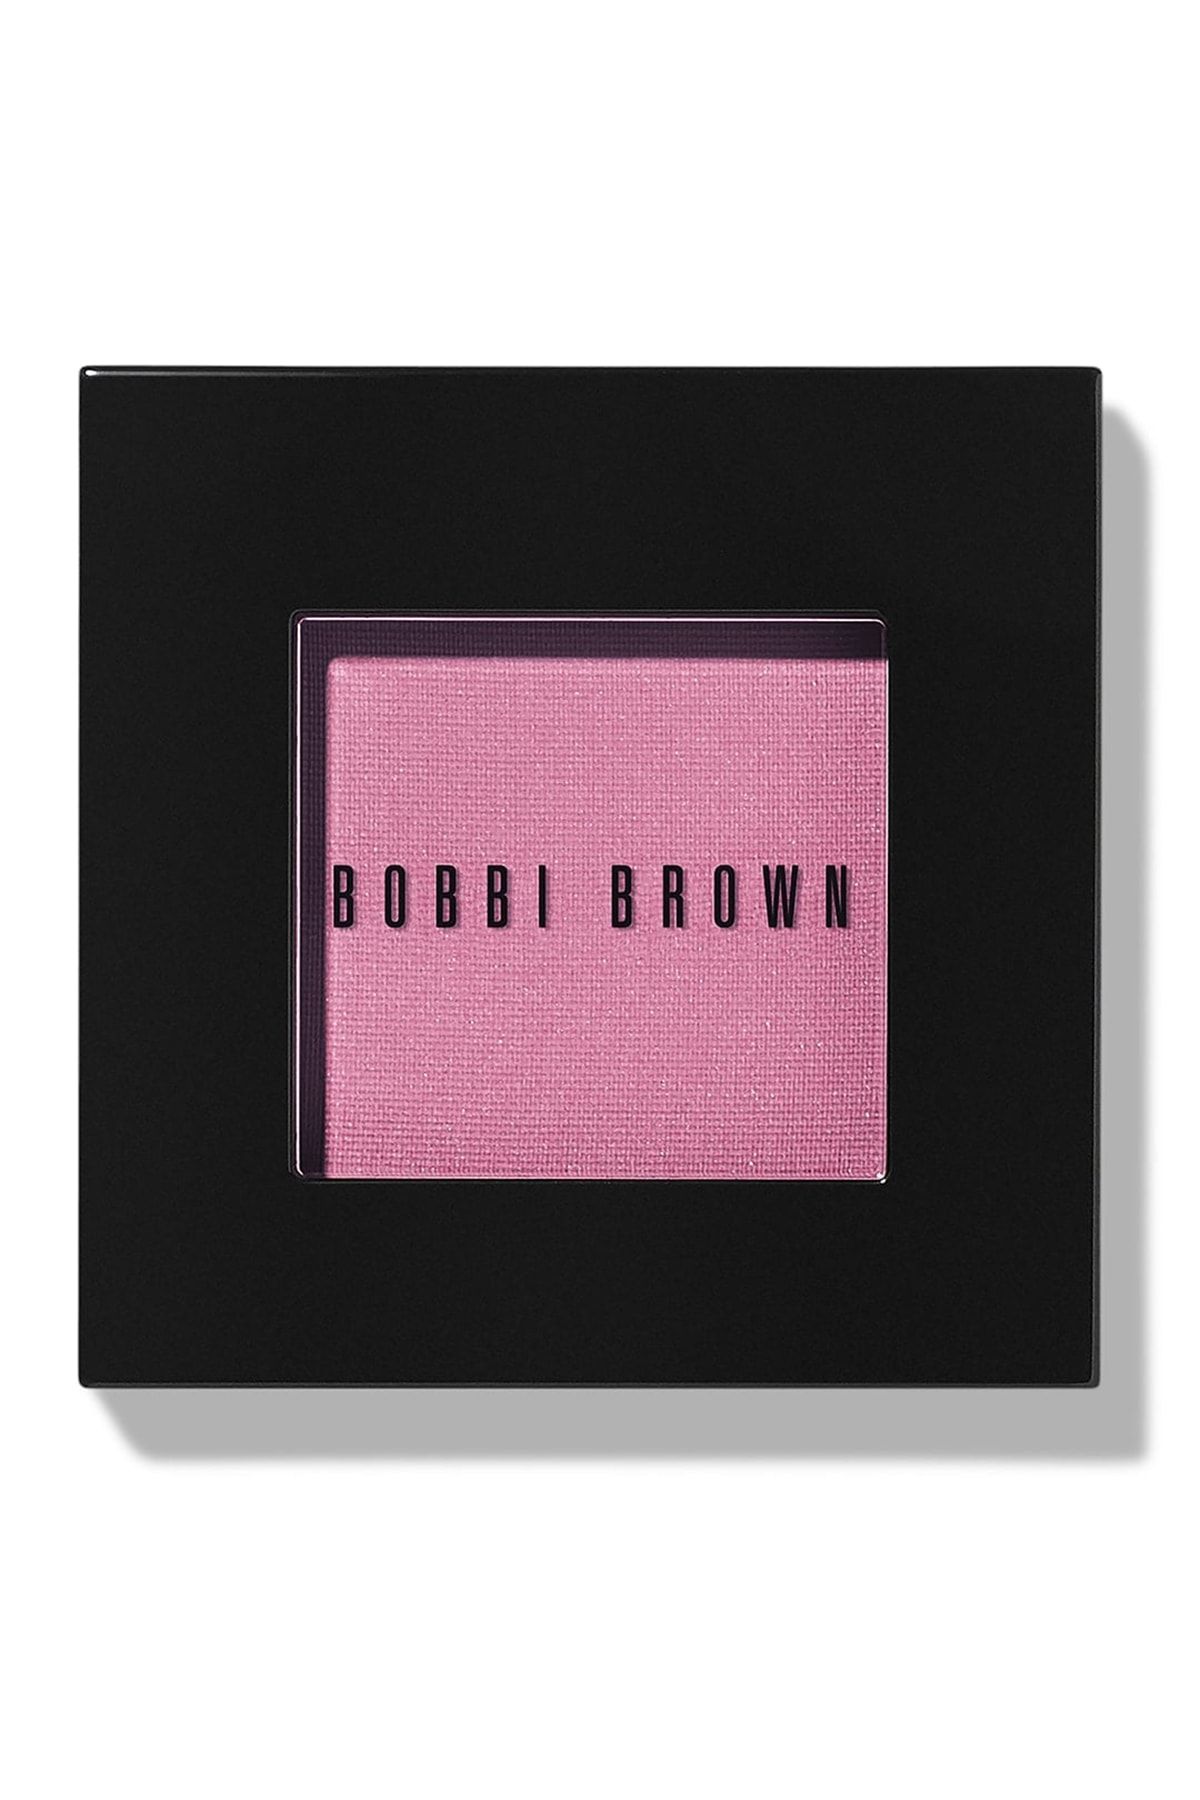 Bobbi Brown Blush / Allık 3.7 G Pale Pink 716170059662